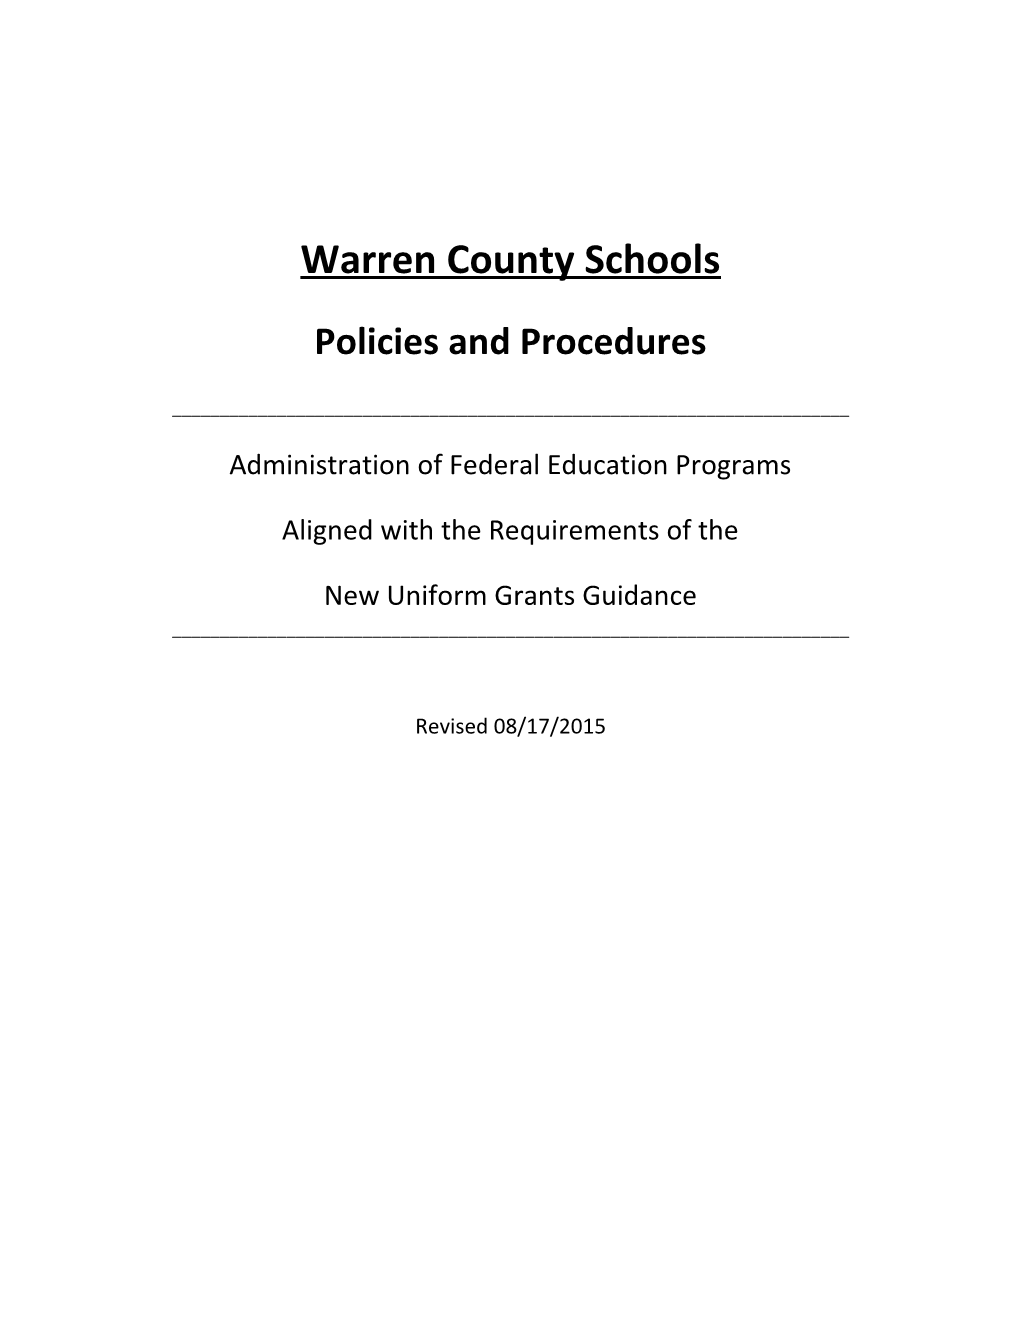 Warren County Schools s1